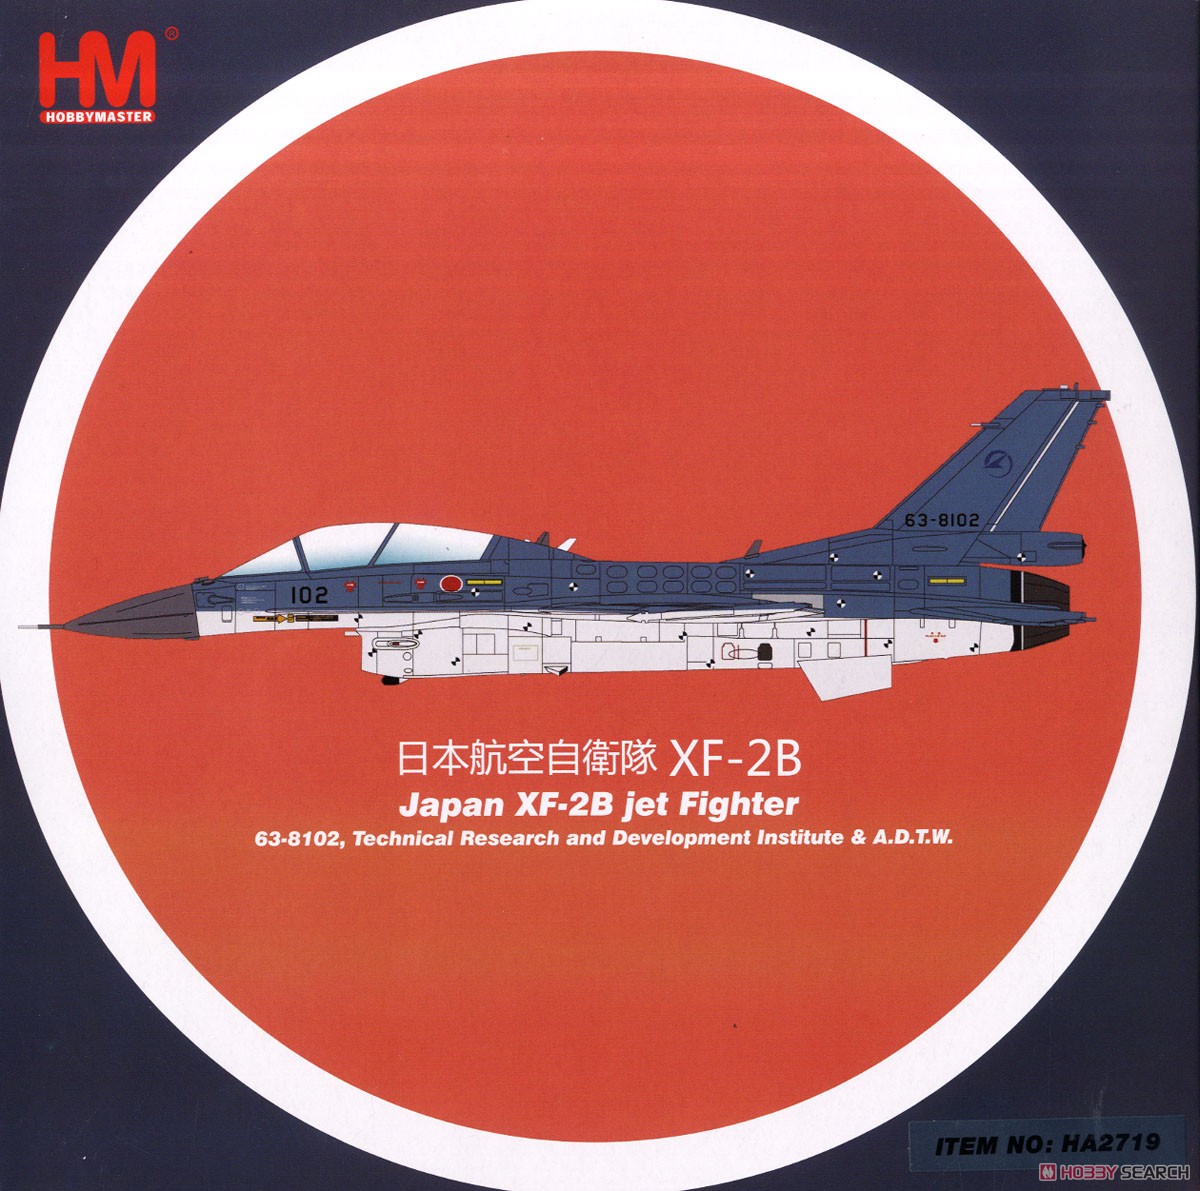 航空自衛隊 XF-2B 複座支援戦闘機 /空対空ミサイル `63-8102 A.D.T.W.` (完成品飛行機) パッケージ1